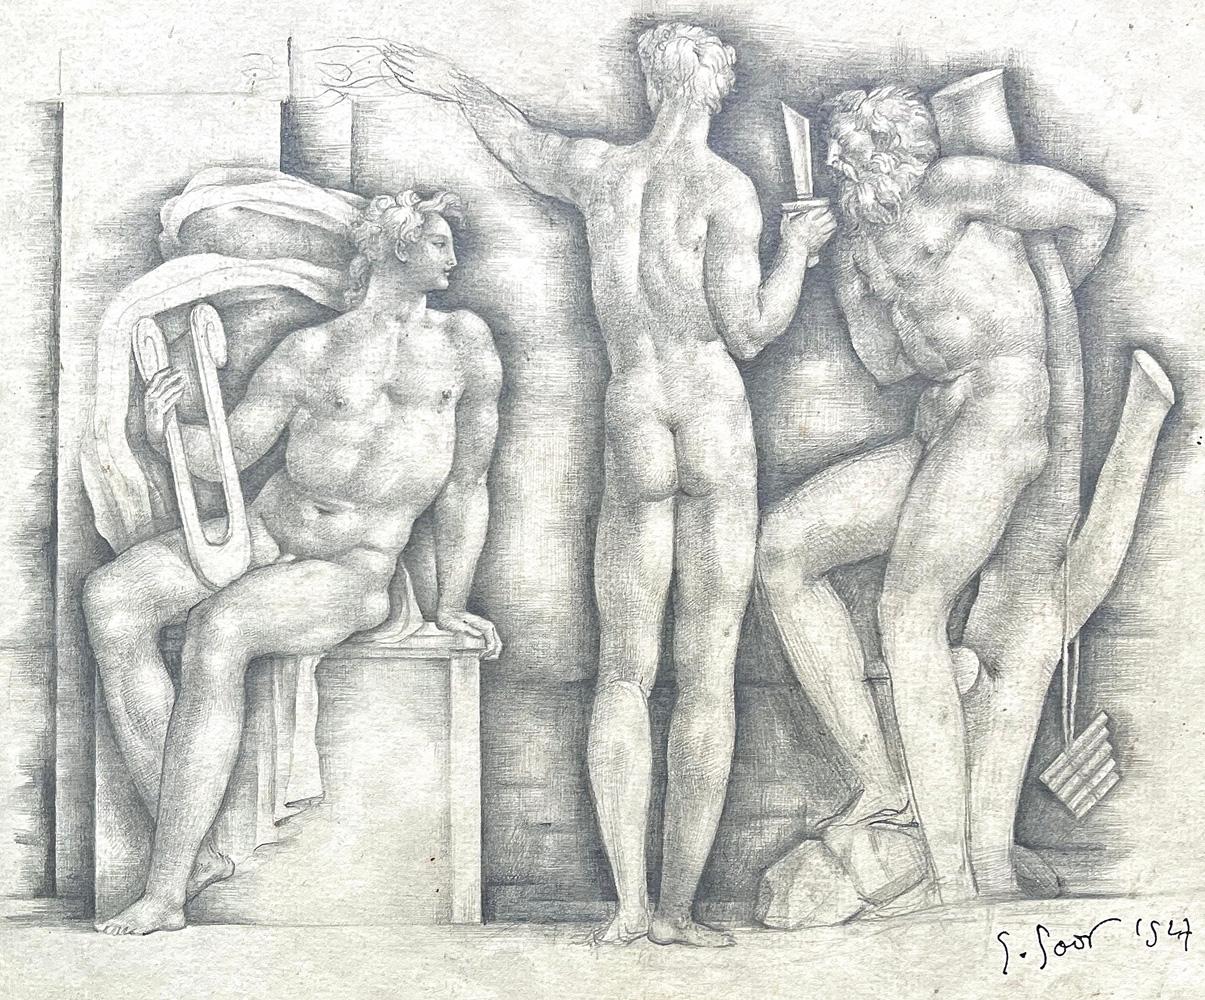 Superbement conçu et exécuté par Gaston Goor à la fin des années 1940, alors qu'il était au sommet de son art, ce dessin réunit trois figures masculines - toutes magnifiquement représentées dans le nu - Apollo, Hyancinthe et Cyparissus. Apollo est